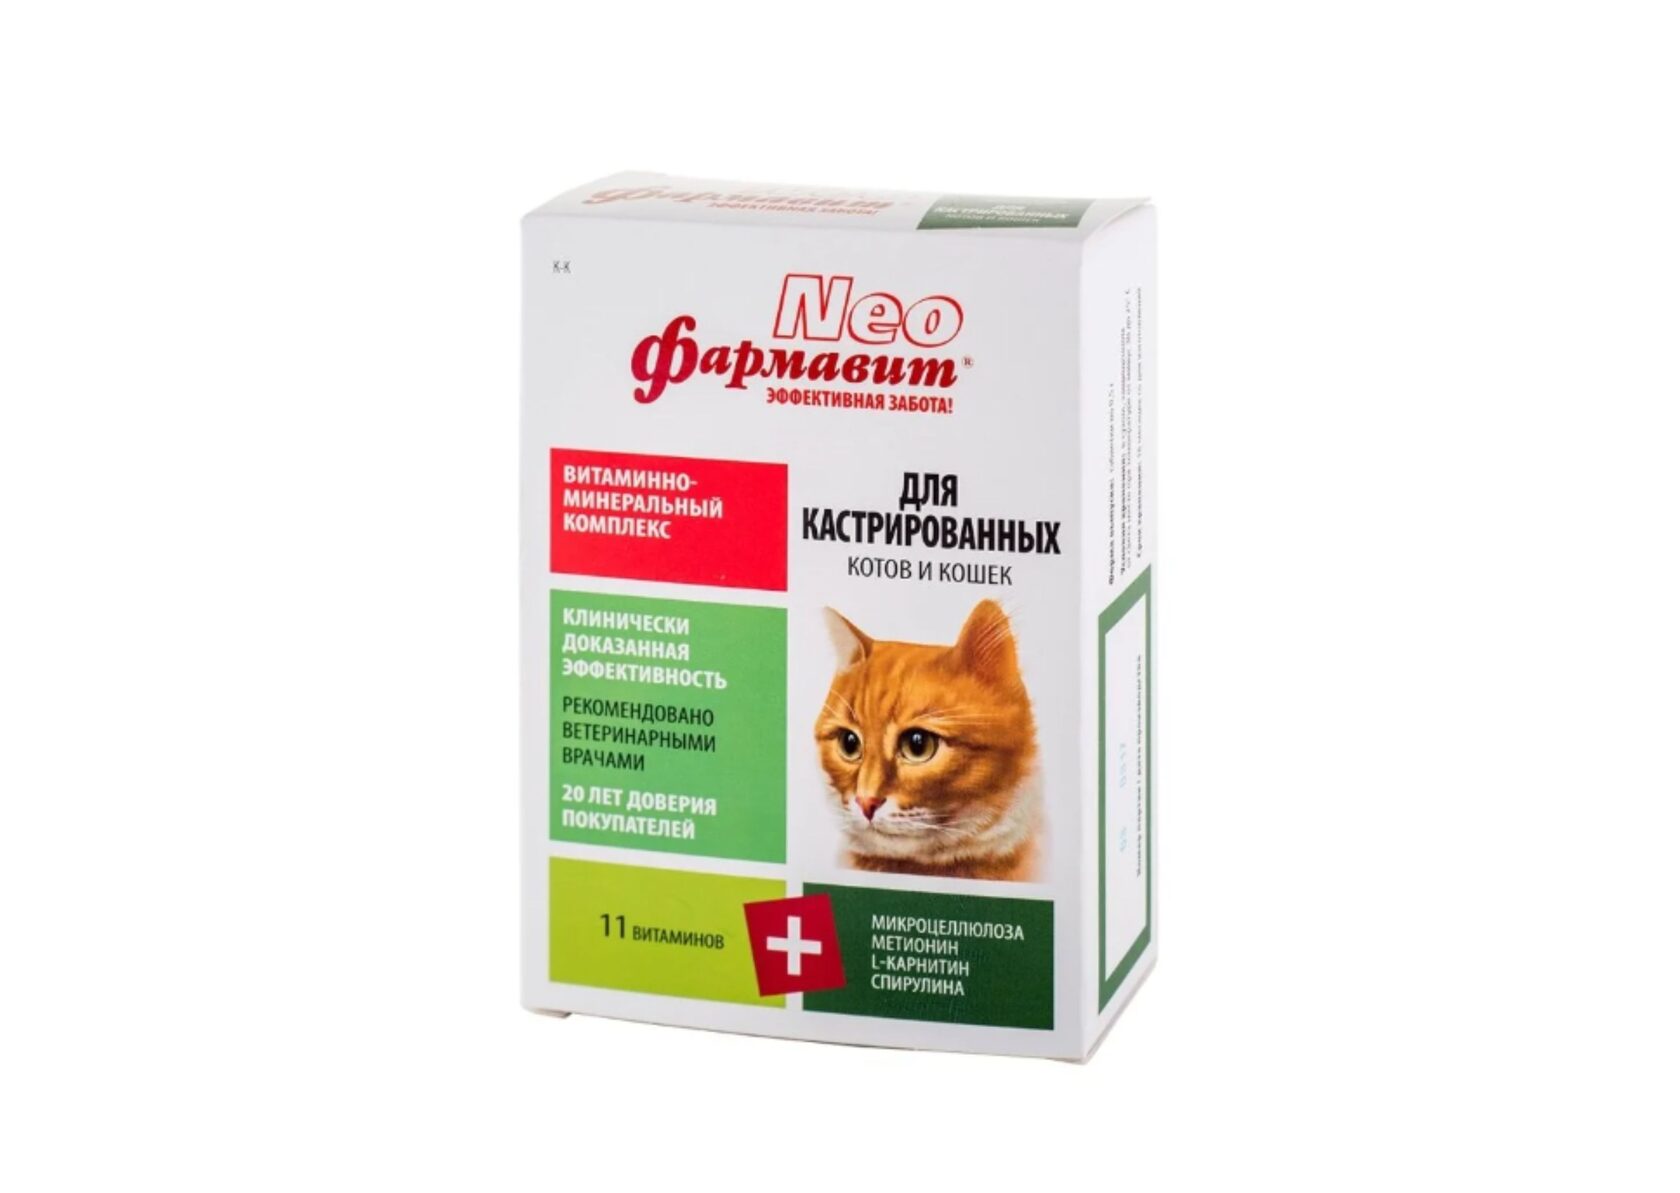 Витамины Фармавит Neo Витаминно-минеральный комплекс для кастрированных котов и кошек